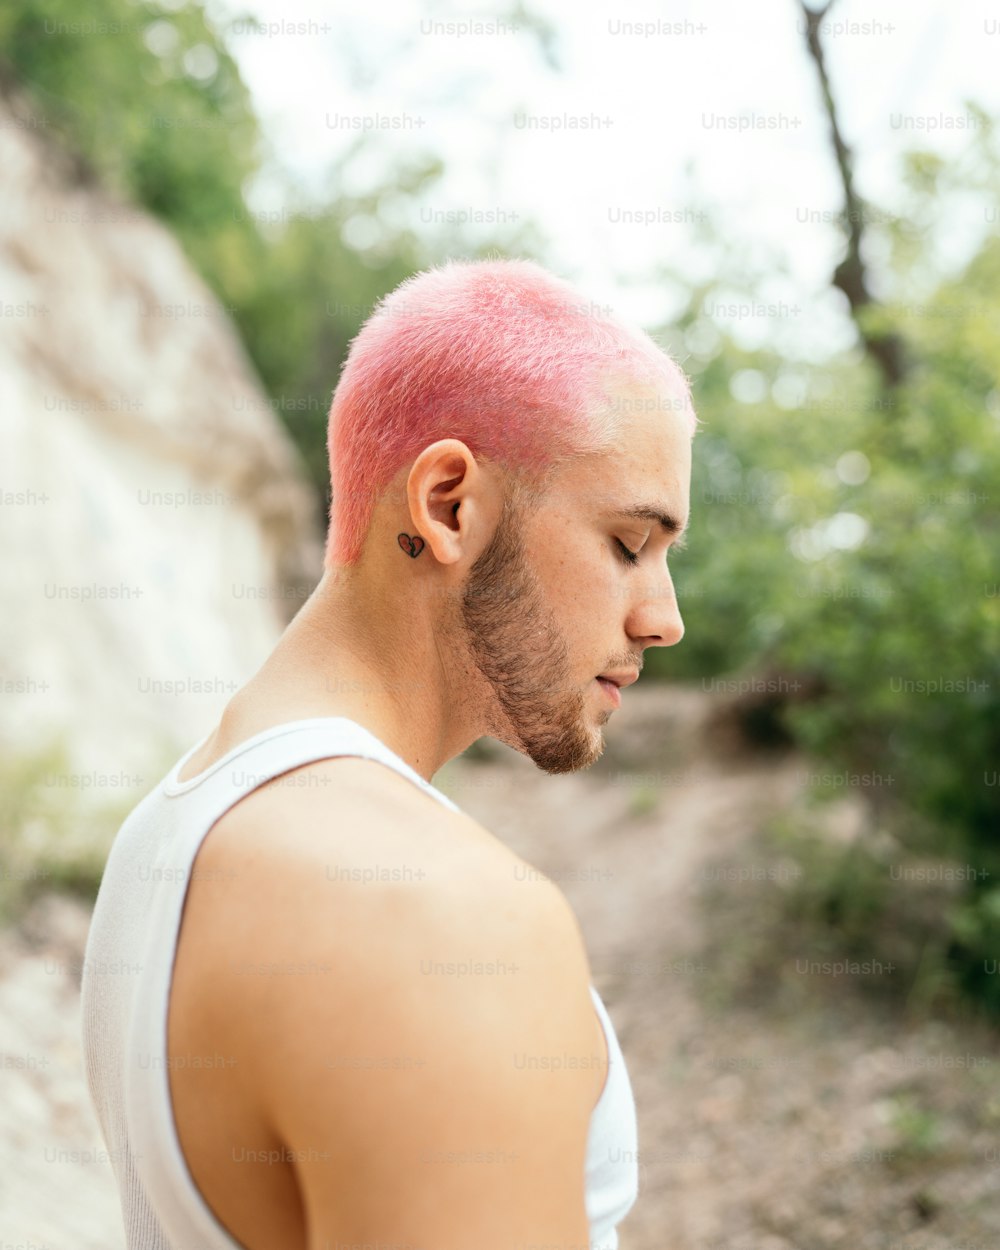 Un uomo con i capelli rosa e una canottiera bianca